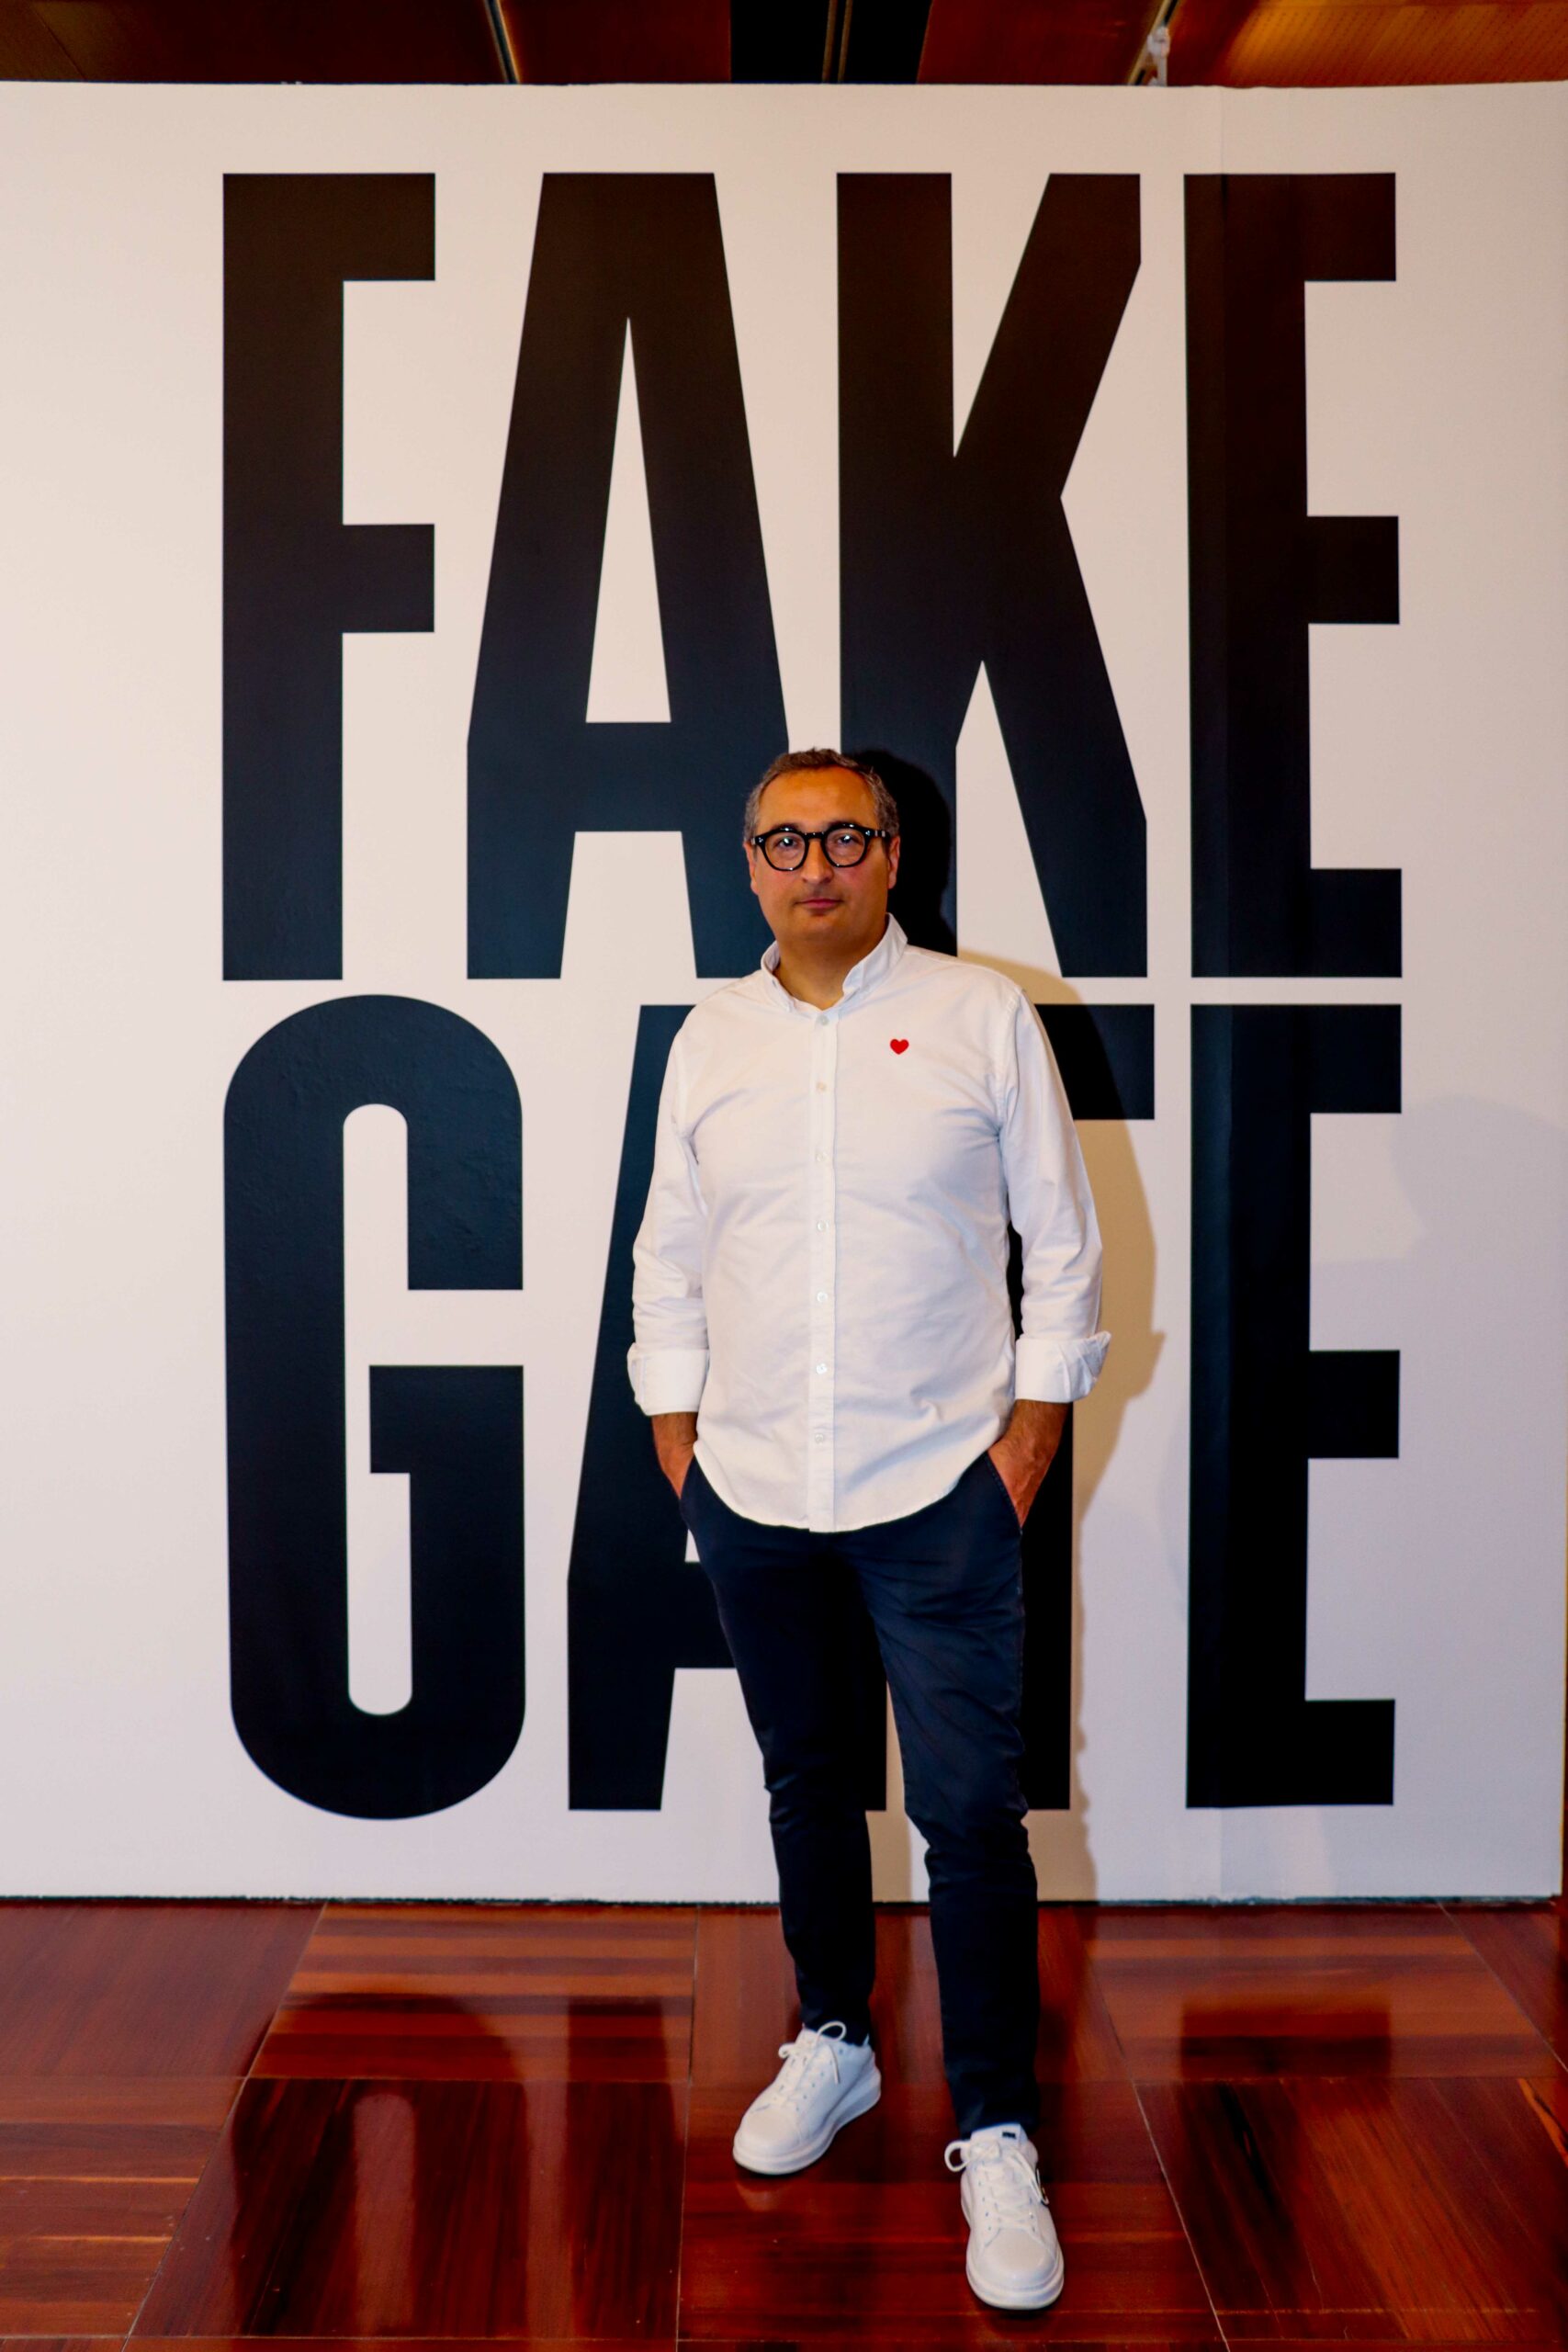 El EMAT acoge la exposición ‘Fake Gate’, del artista torrentino Eugenio Simó